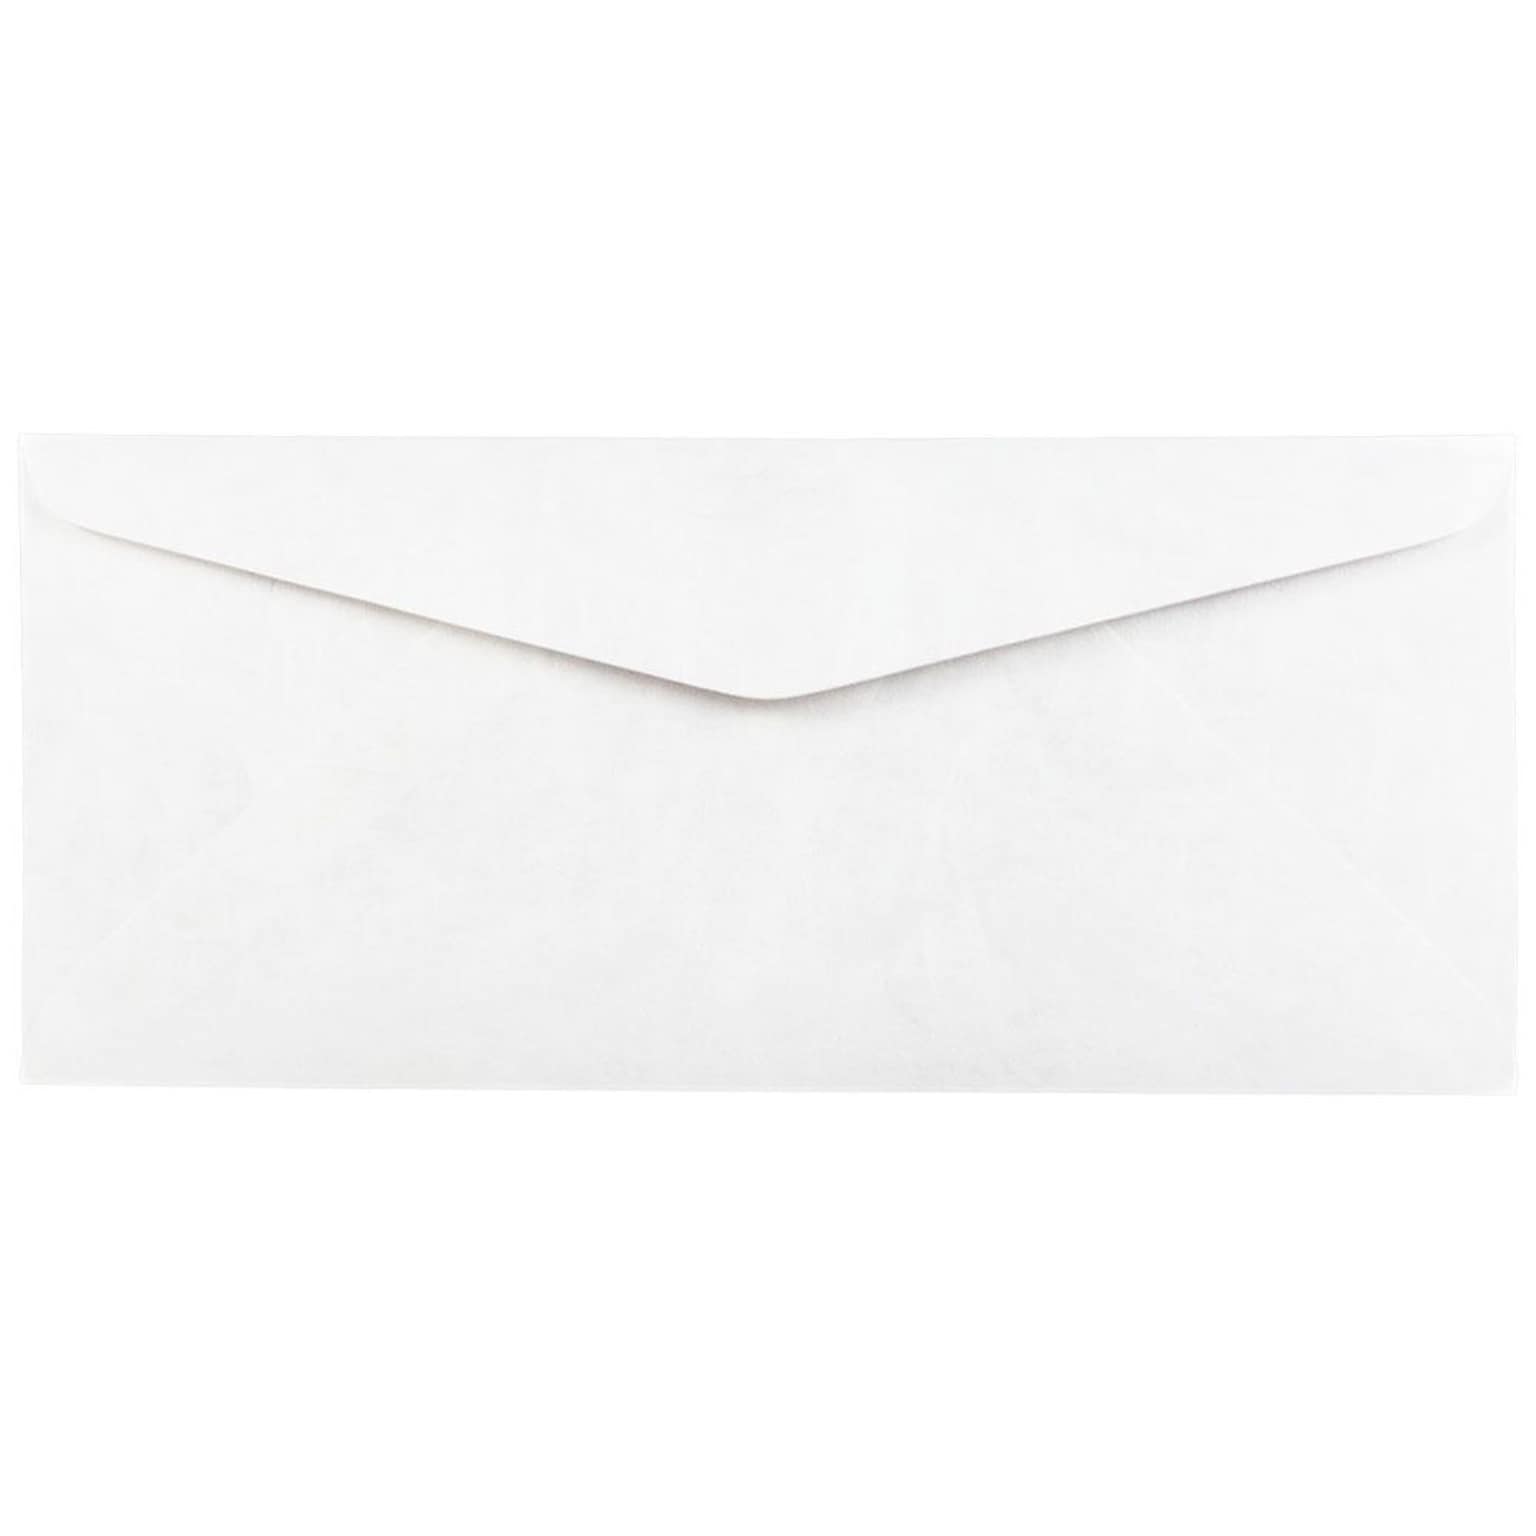 JAM Paper #10 Business Envelope, 4 1/8 x 9 1/2, White, 25/Pack (2131077)